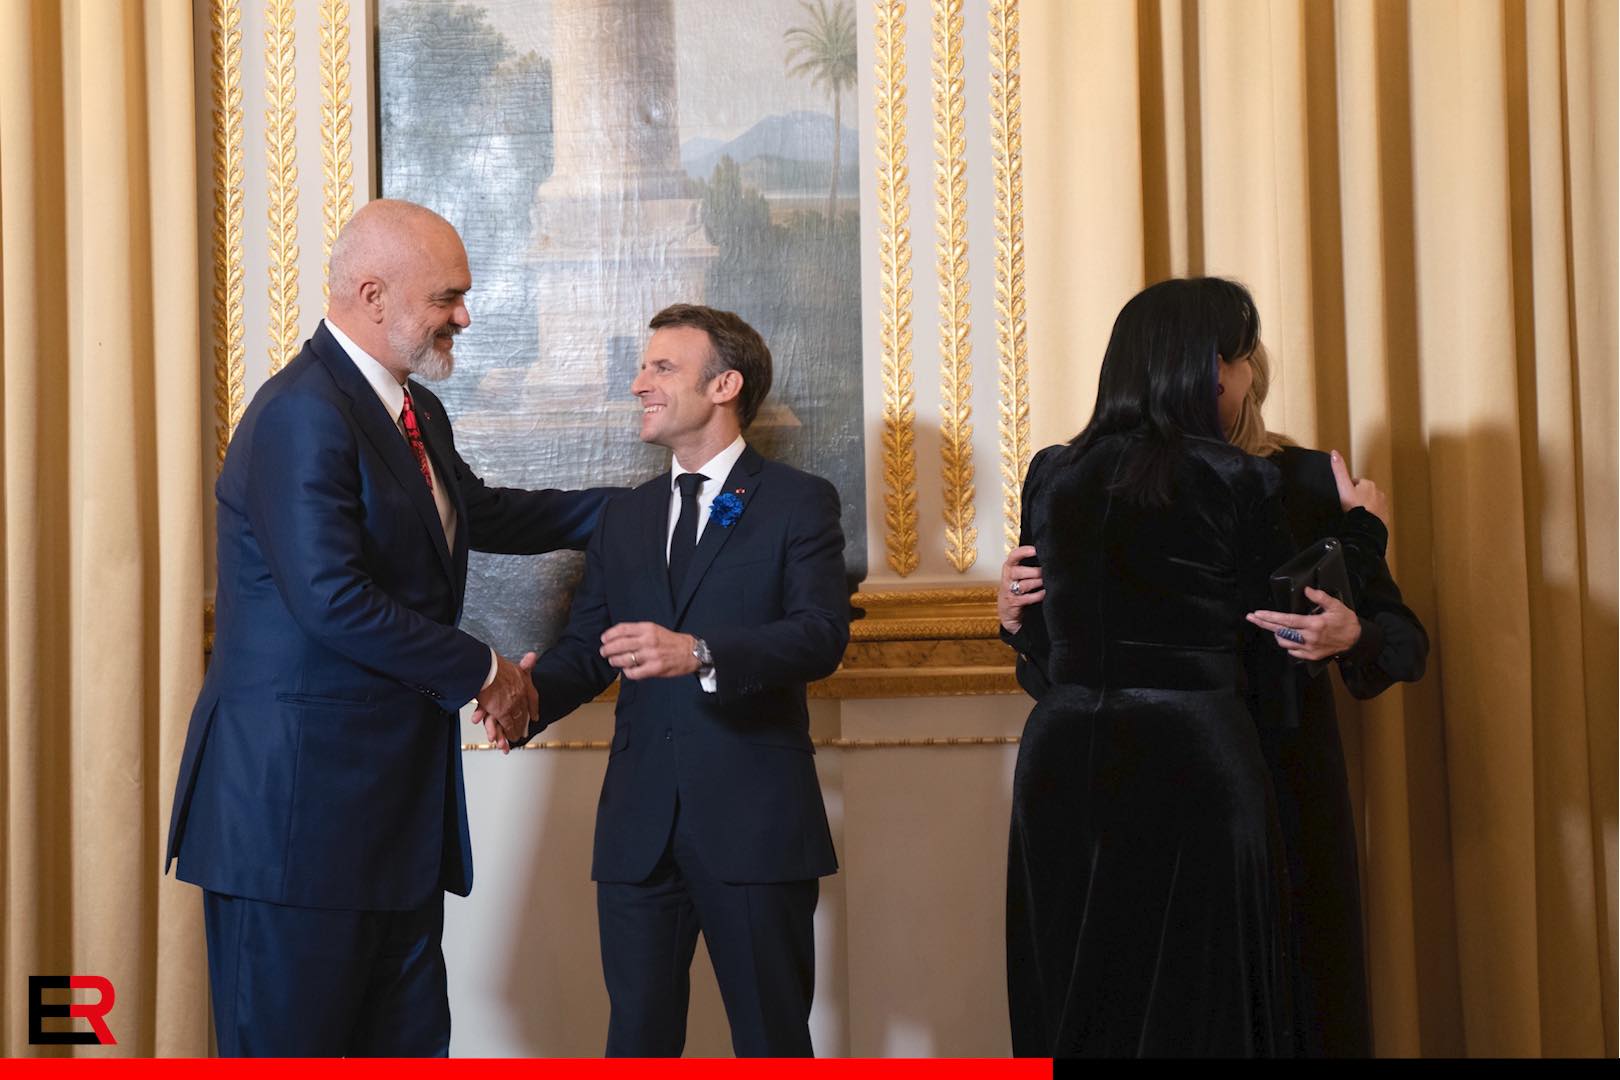 Forumi i Paqes/ Rama publikon fotot nga Parisi, krah më krah me Macron dhe Abazoviç